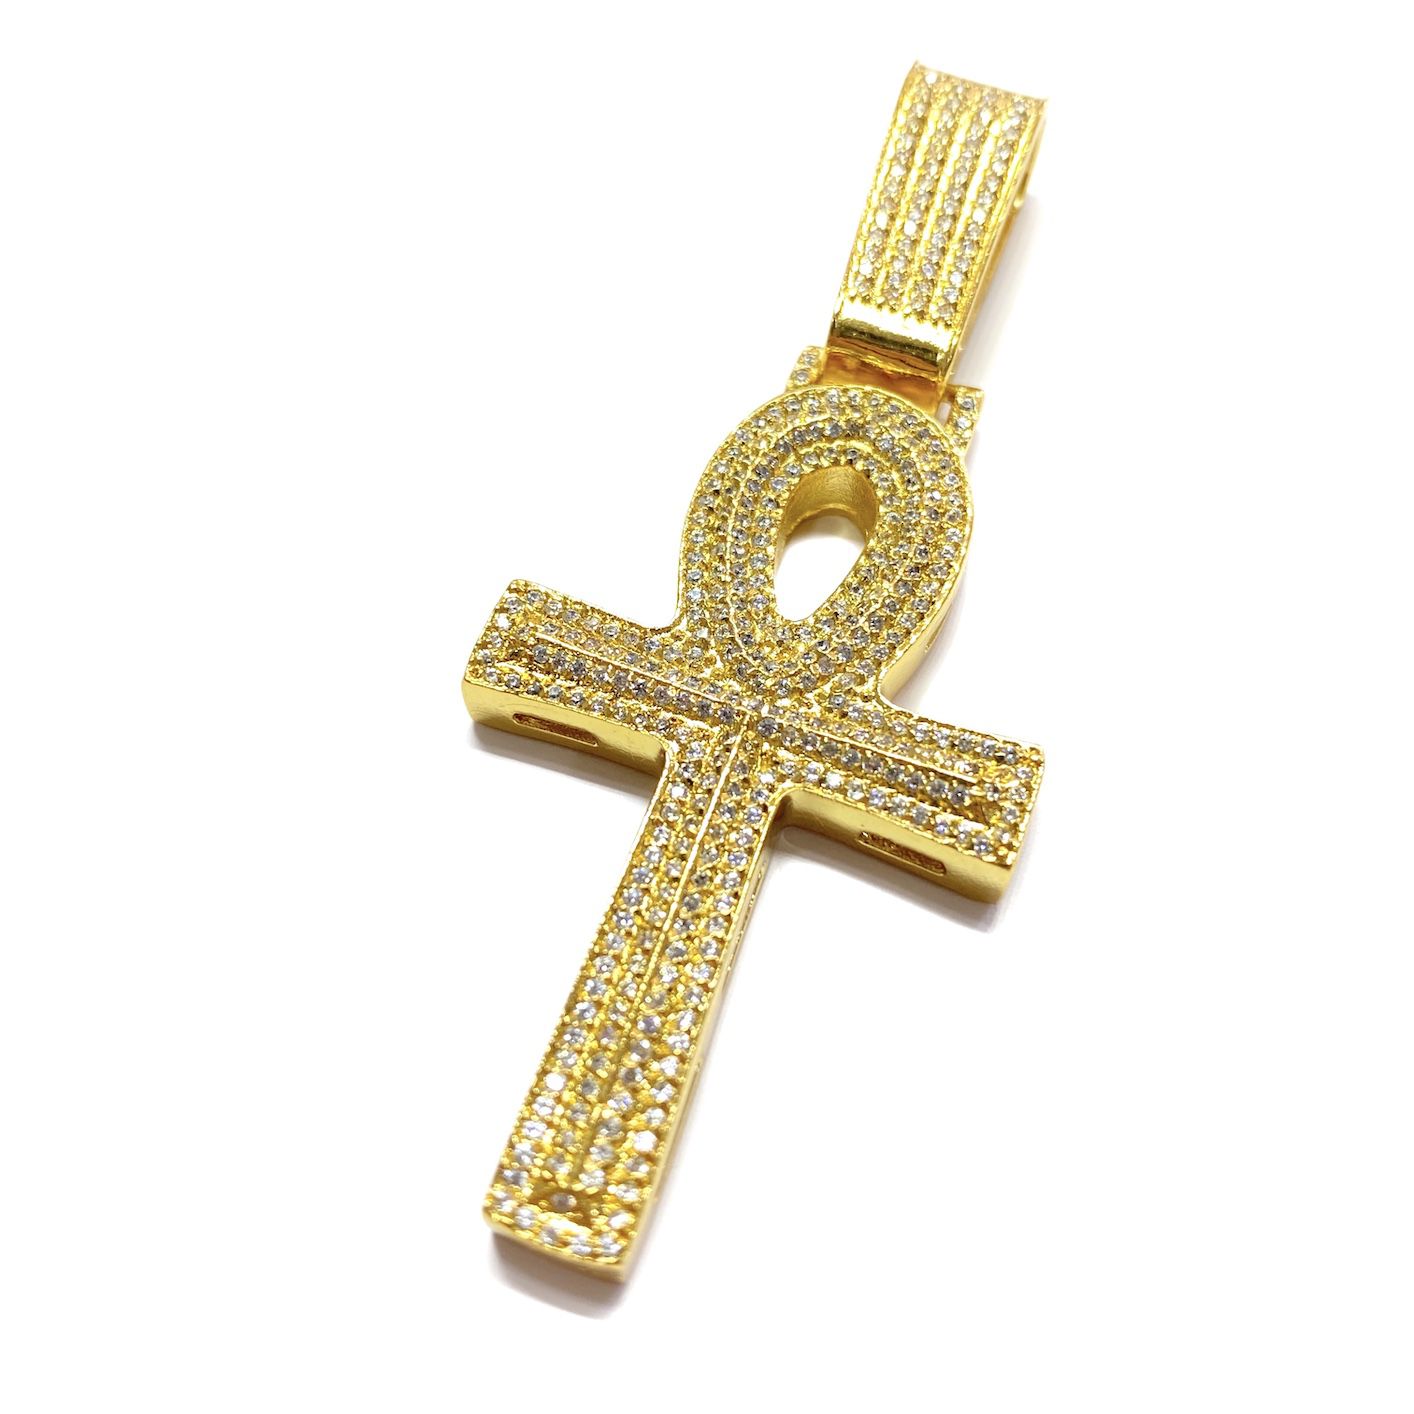 Pingente Crucifixo GDO Cruz Ansata Cravejada em Zircônia (5,5cmX3,2cm) (13,5g) (Banho Ouro 24k)